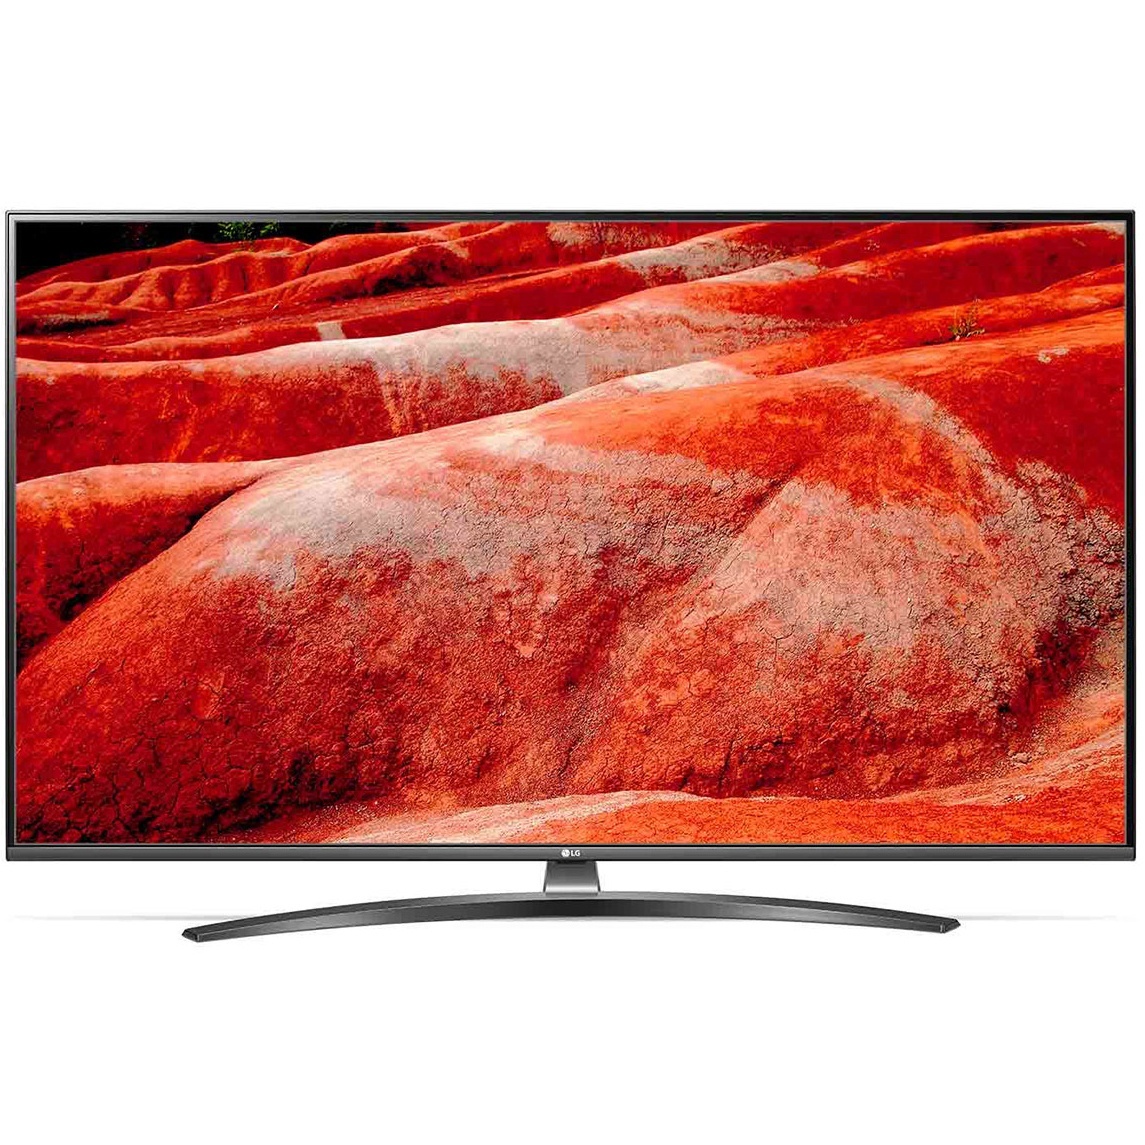 LG UHD TV 55 inch 4K Active HDR 55UM7600PTA True Color Accuracy Chính hãng